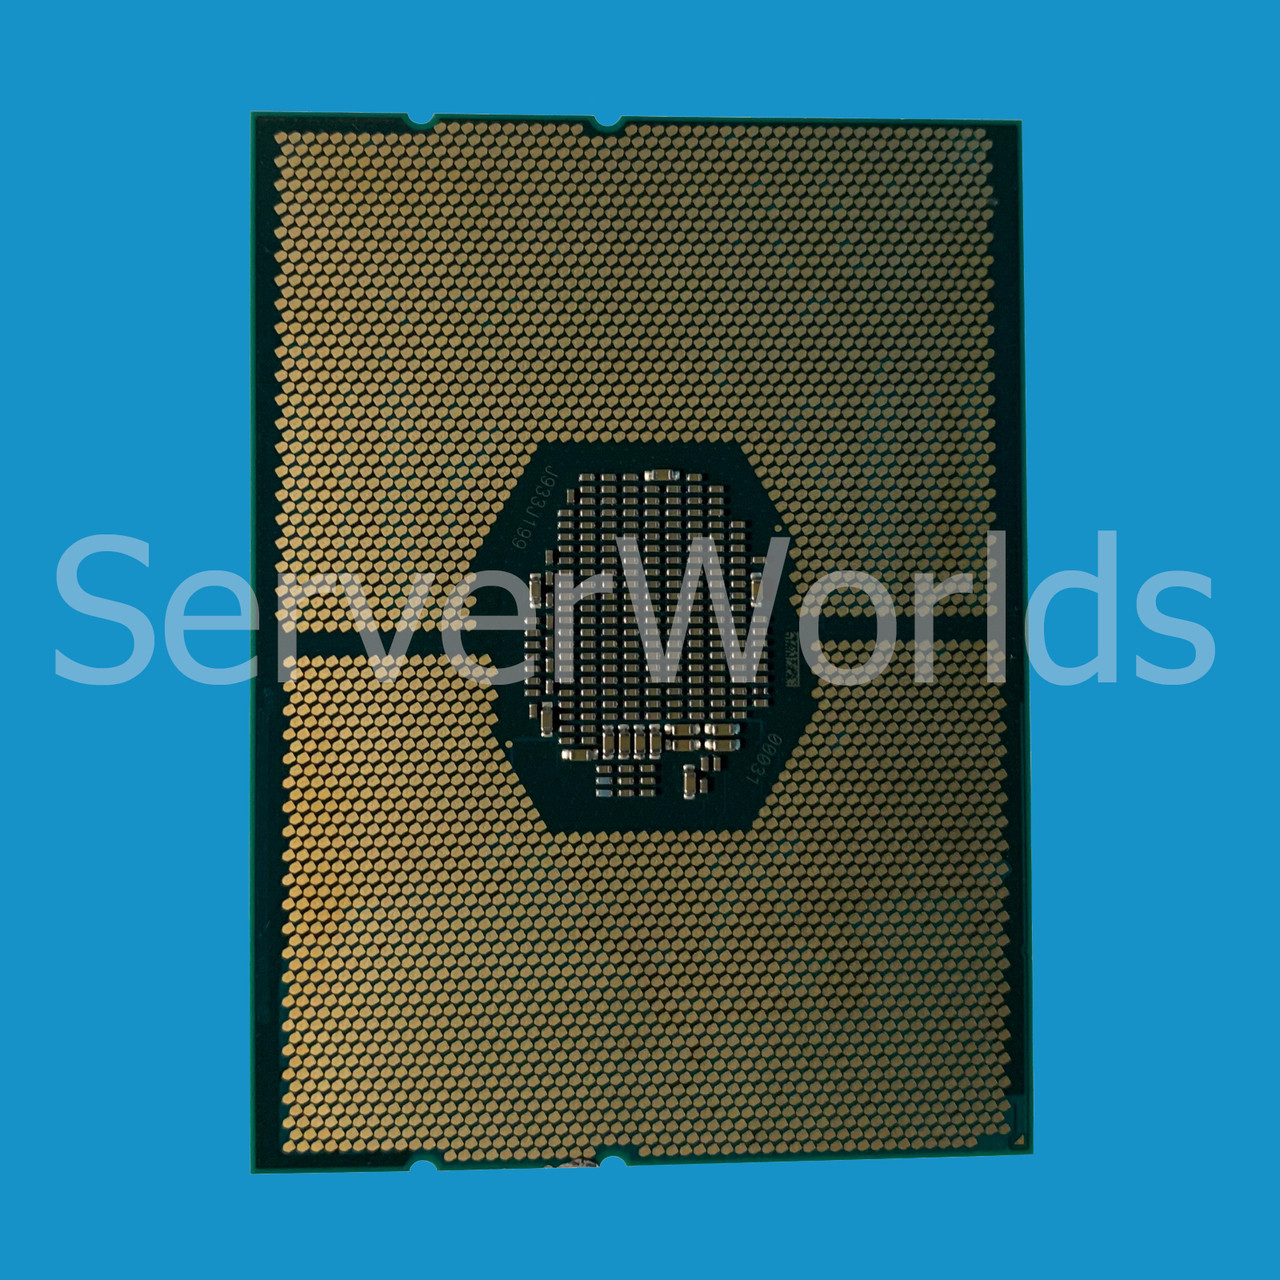 Intel SR3J5 Xeon Gold 6154 18C 3.0Ghz 24.75MB Processor